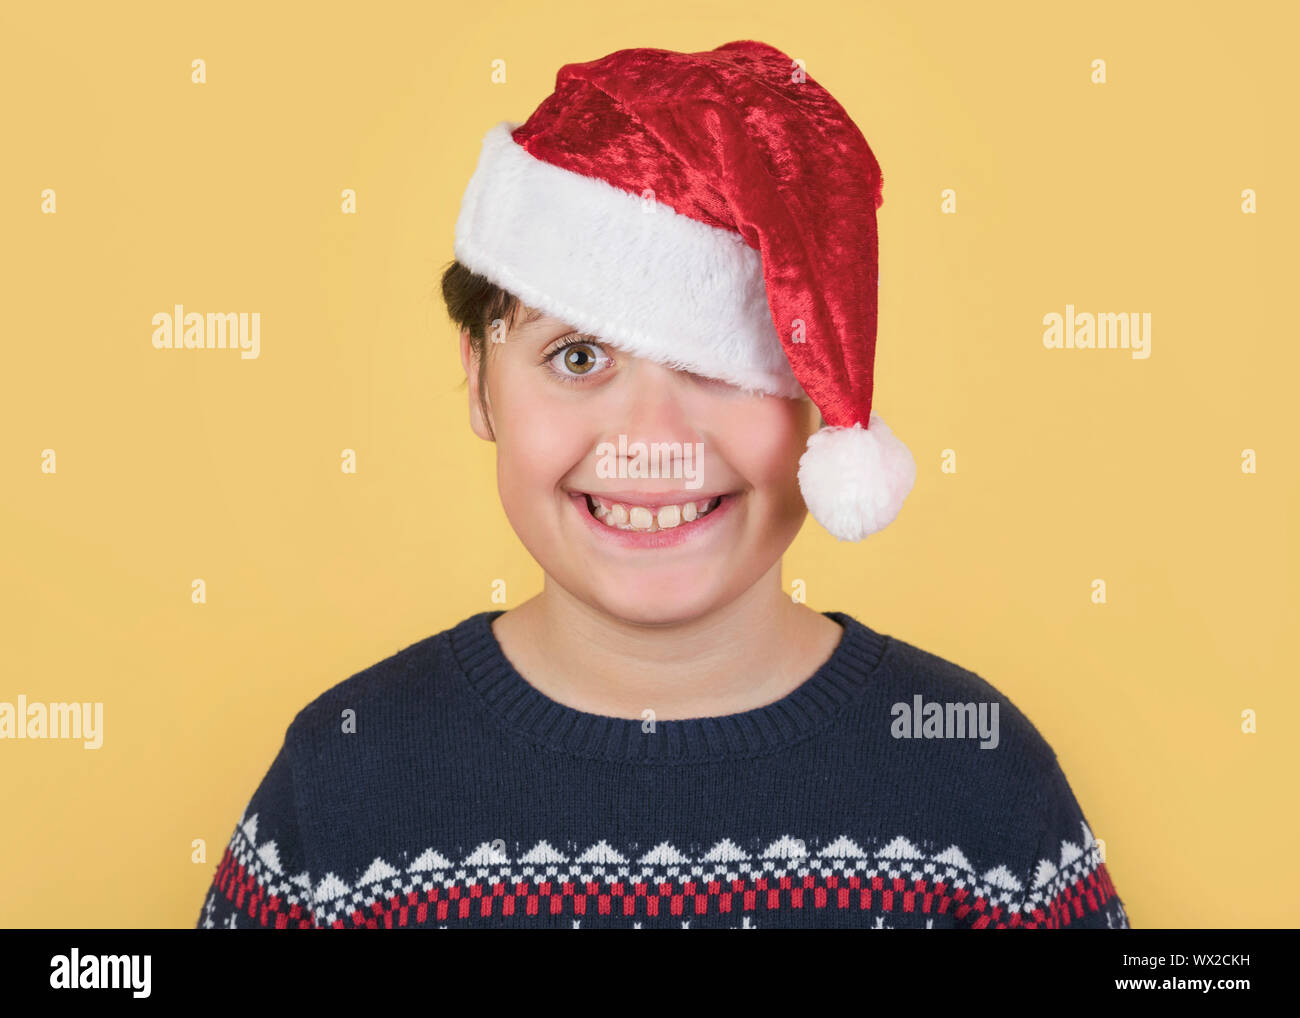 Child Wearing Christmas Santa Claus Hat sur fond jaune Banque D'Images